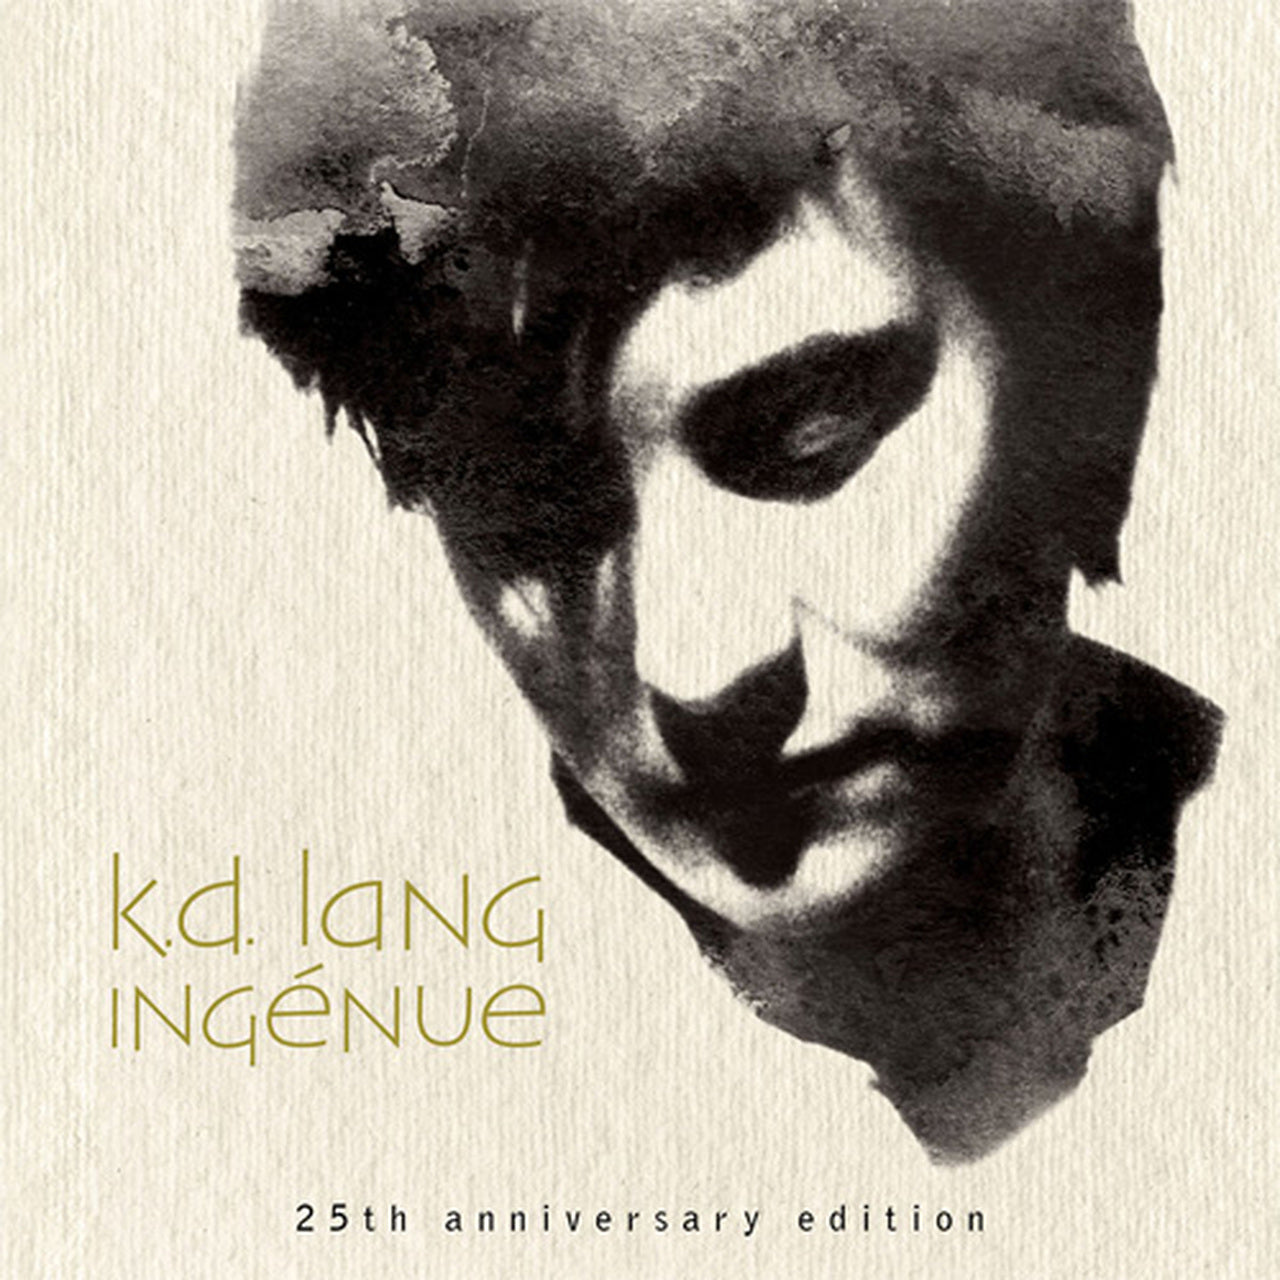 KD LANG - INGENUE - EDICIÓN 25 ANIVERSARIO - 2 LP - LP DE VINILO